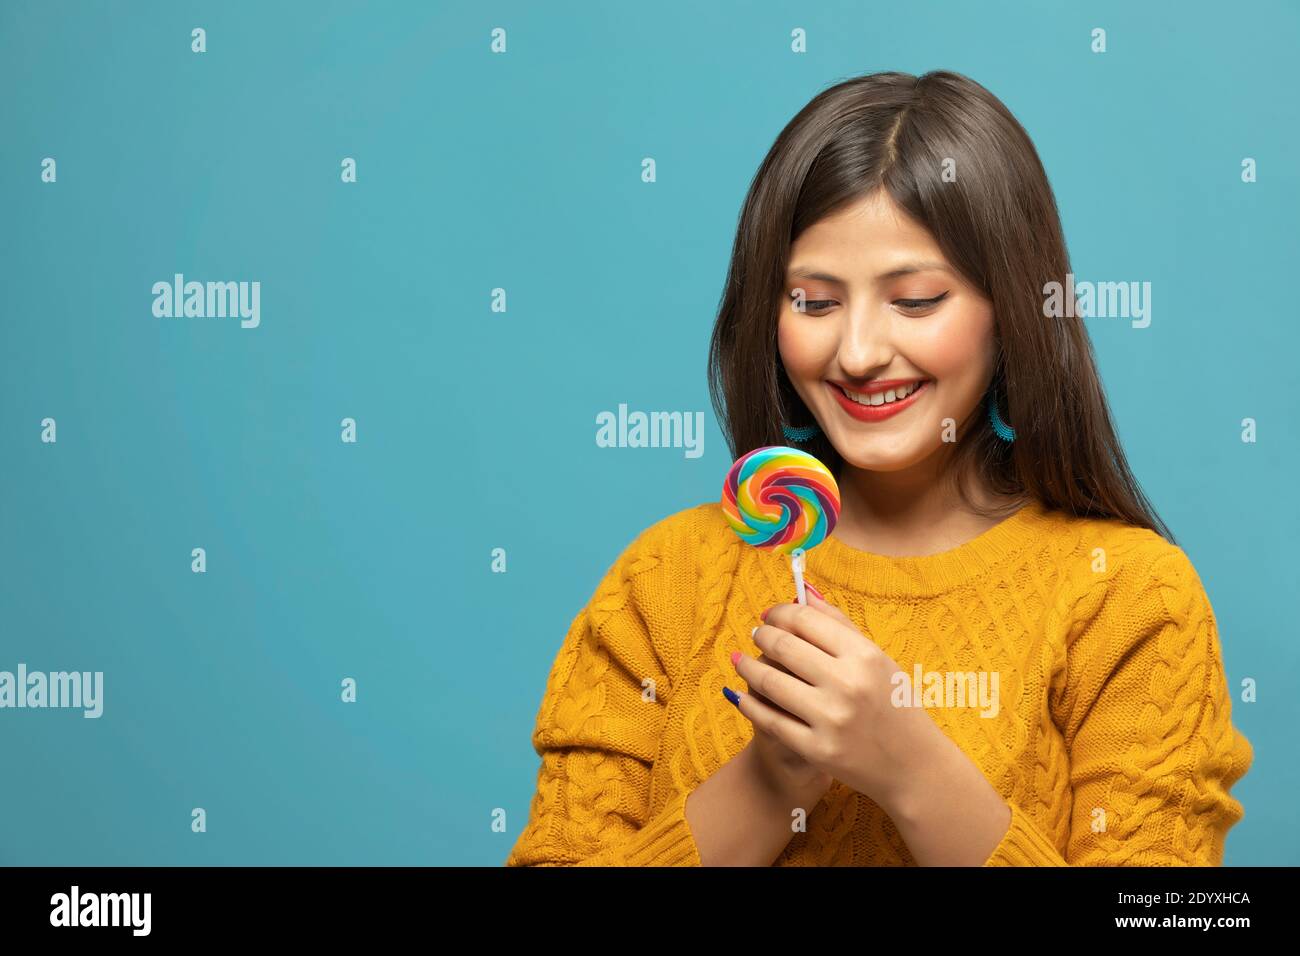 Retrato de una joven que sostiene un lollipop en la mano Foto de stock